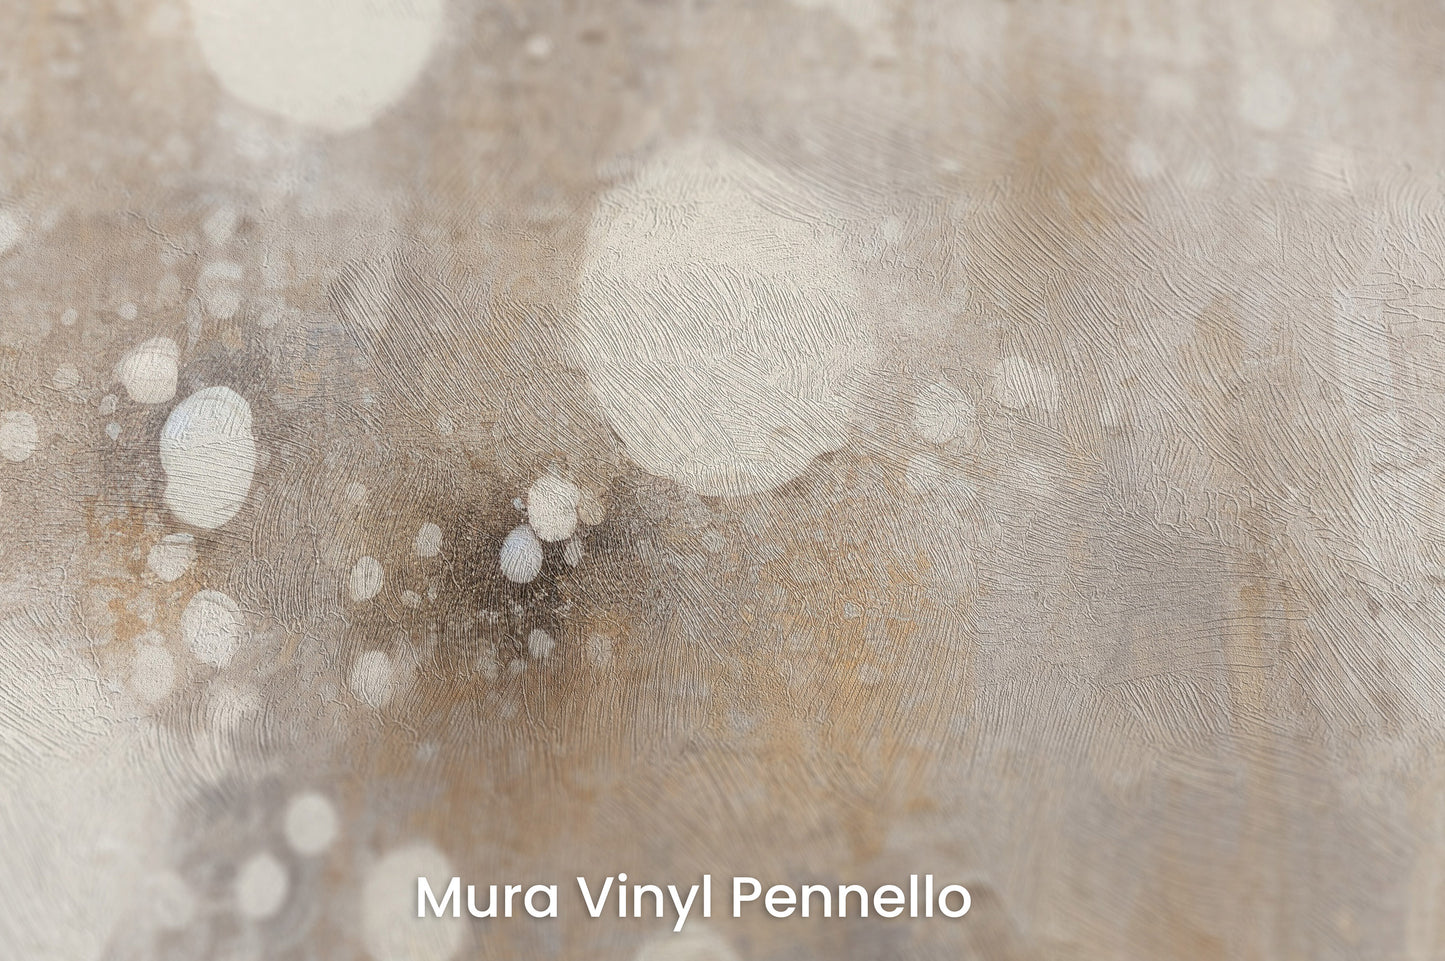 Zbliżenie na artystyczną fototapetę o nazwie CELESTIAL DROPLETS CASCADE na podłożu Mura Vinyl Pennello - faktura pociągnięć pędzla malarskiego.